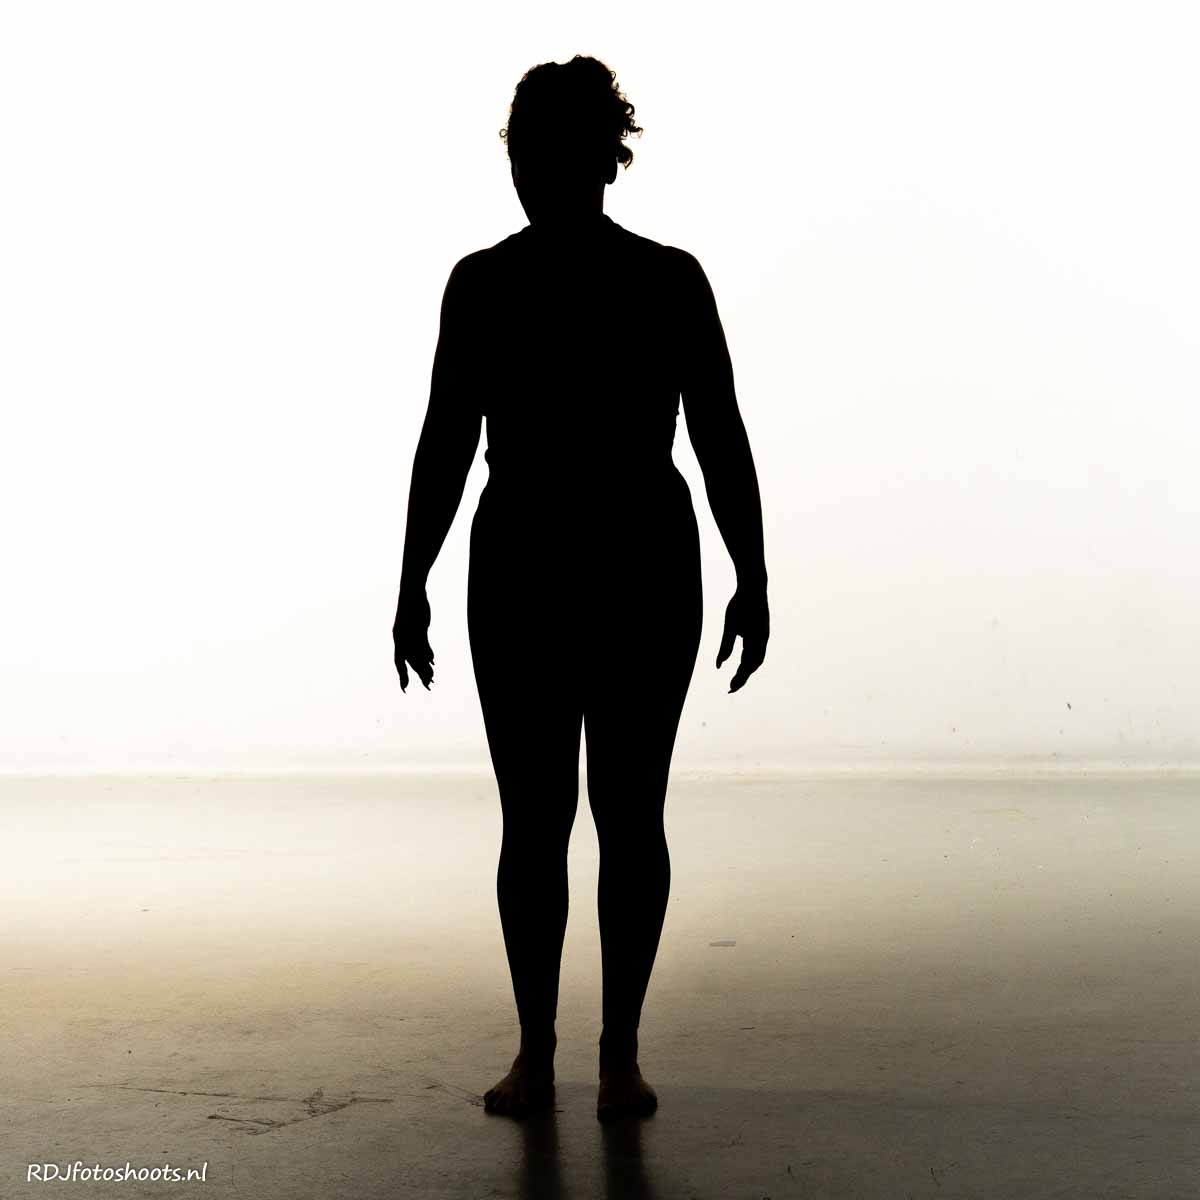 tfp spiritueel: Priscilla, silhouette yoga